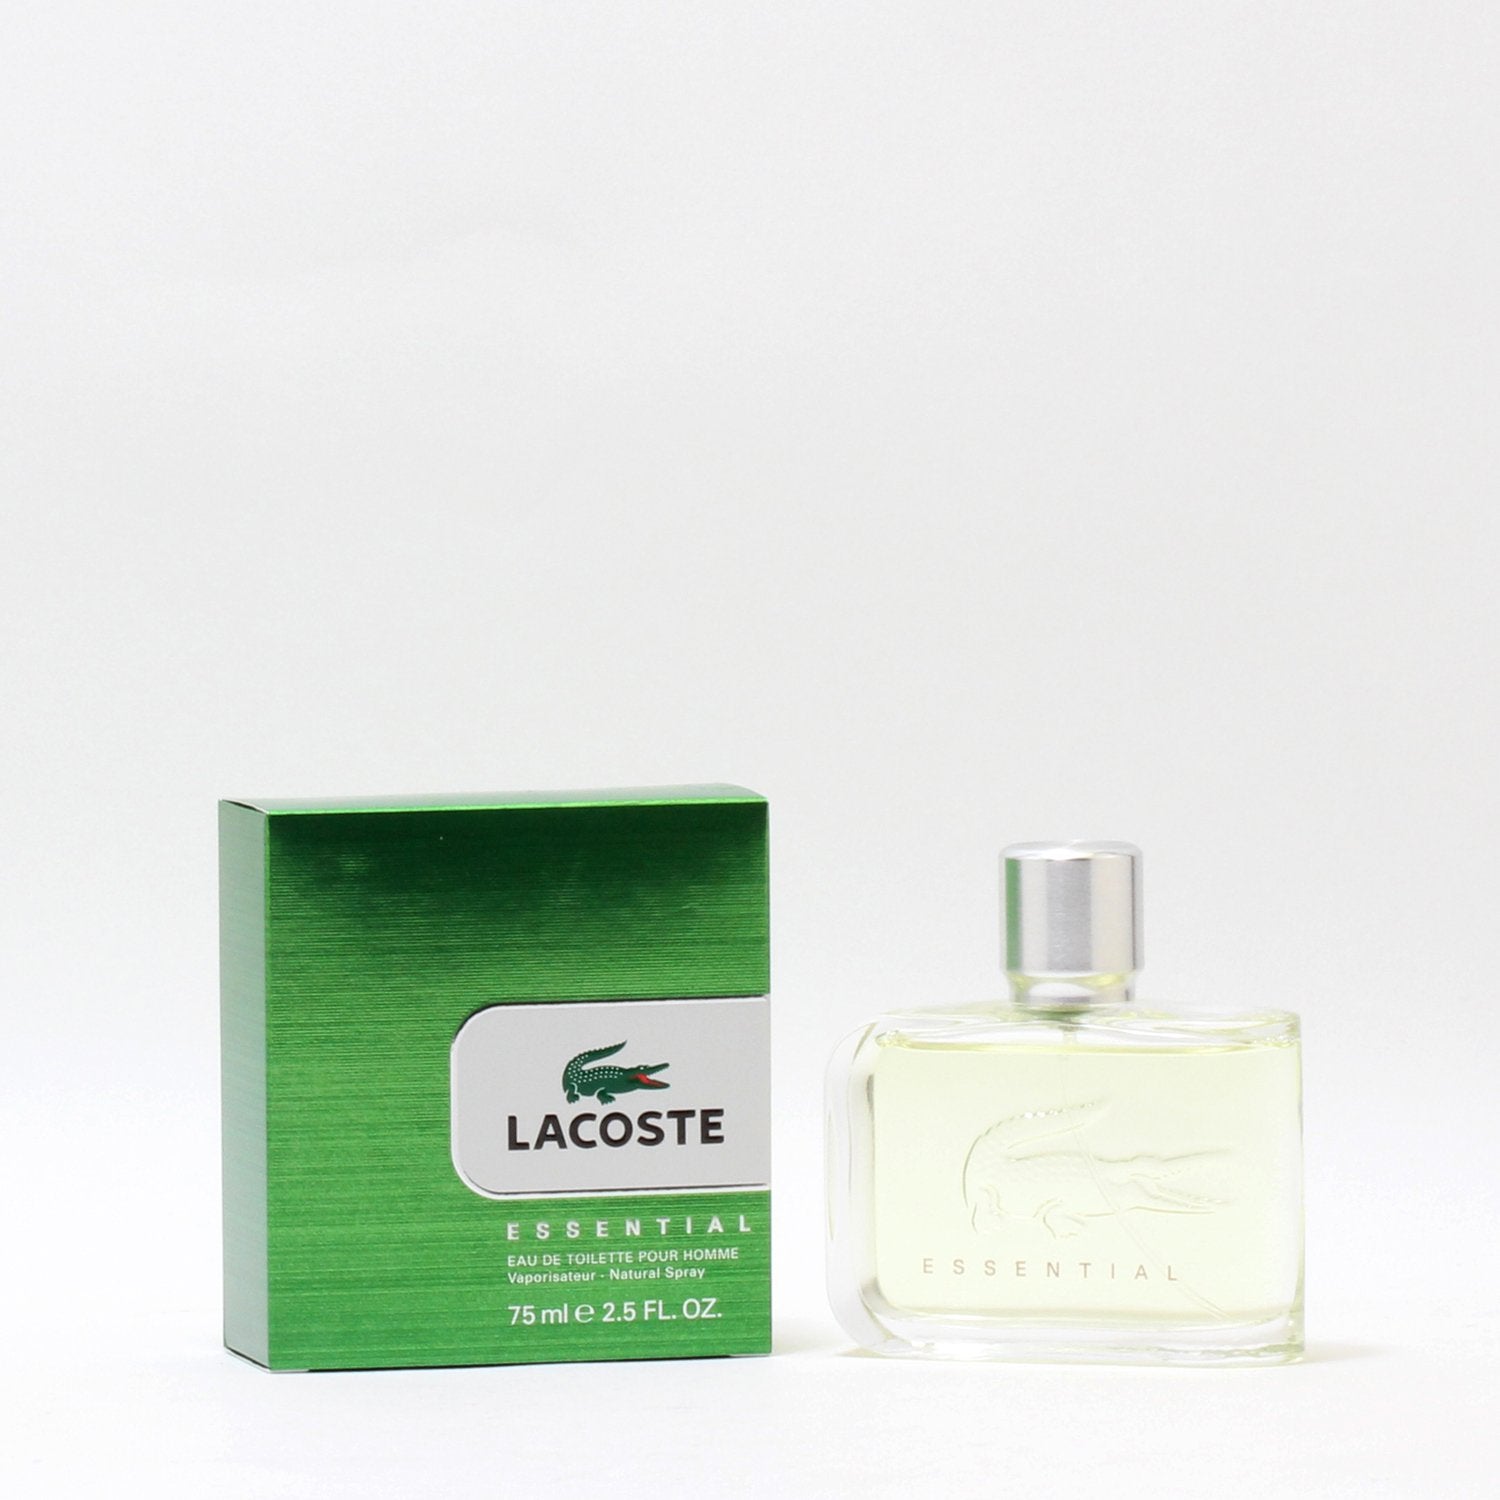 LACOSTE ESSENTIAL FOR MEN EAU DE TOILETTE SPRAY – Fragrance Room